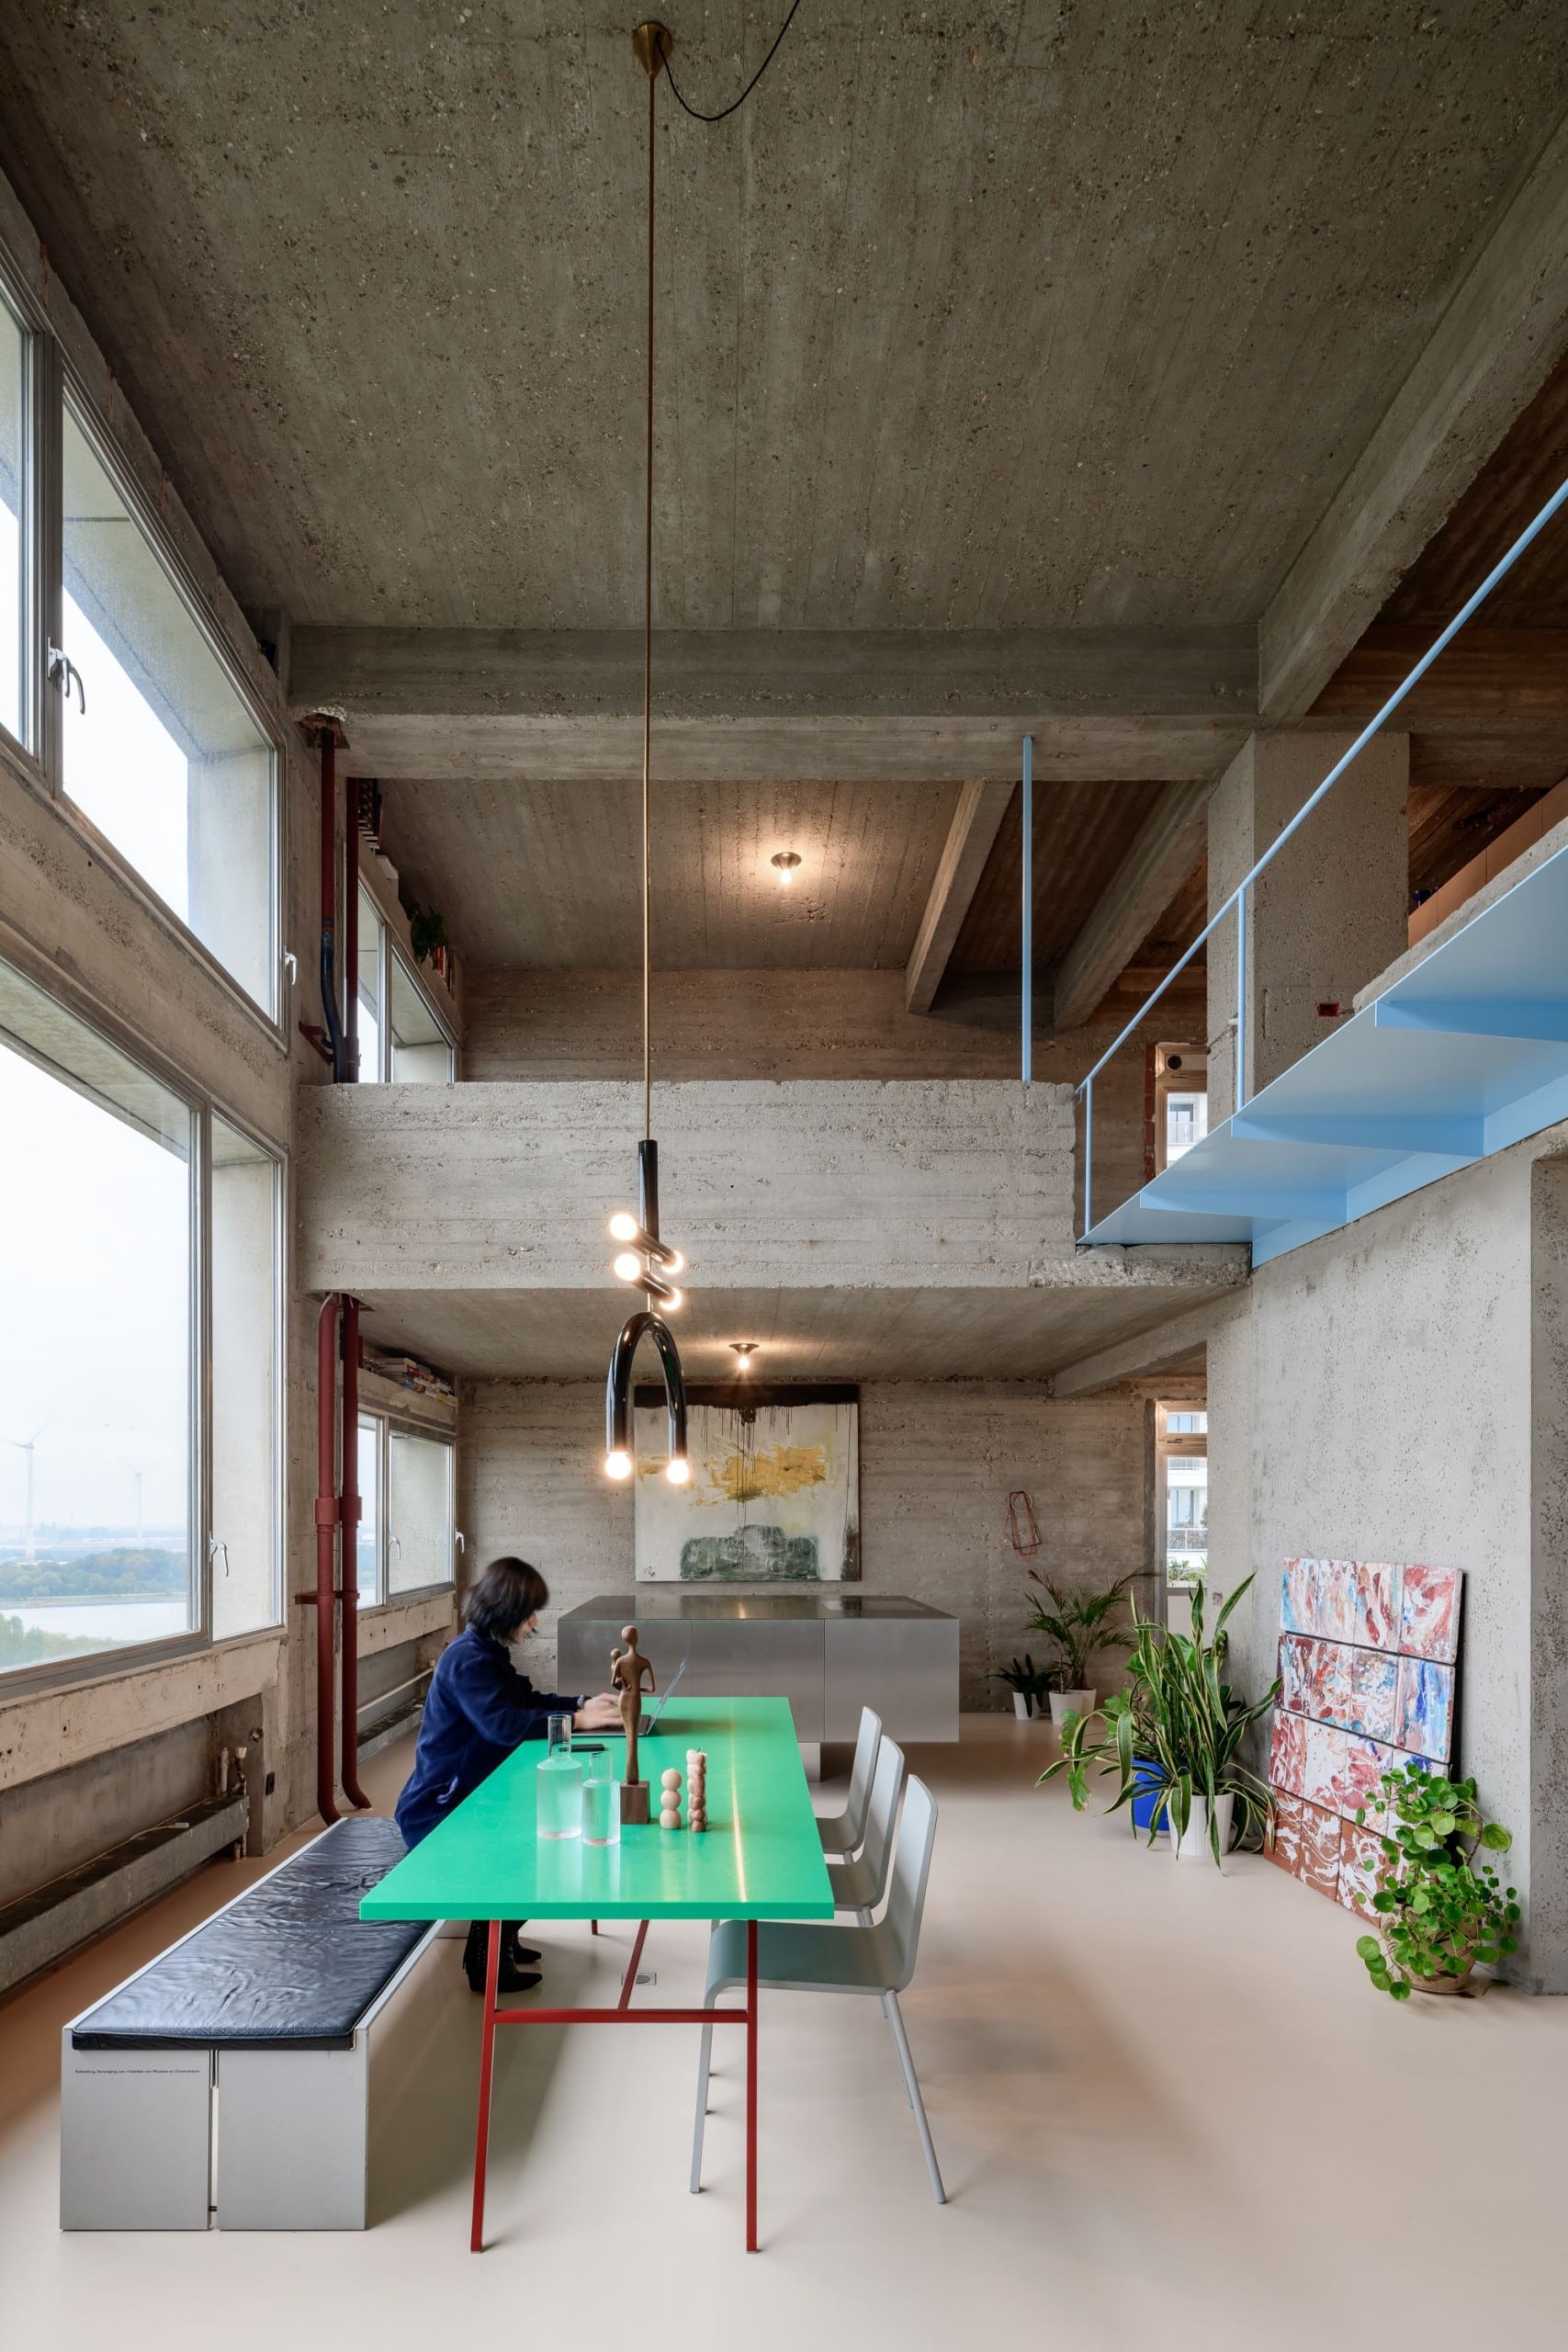 Im Betonturm "Riverside Tower" in Antwerpen hat sich Bram Van Cauter vom Studio Okami eine Maisonette-Wohnung ausgebaut. Foto: Olmo Peeters